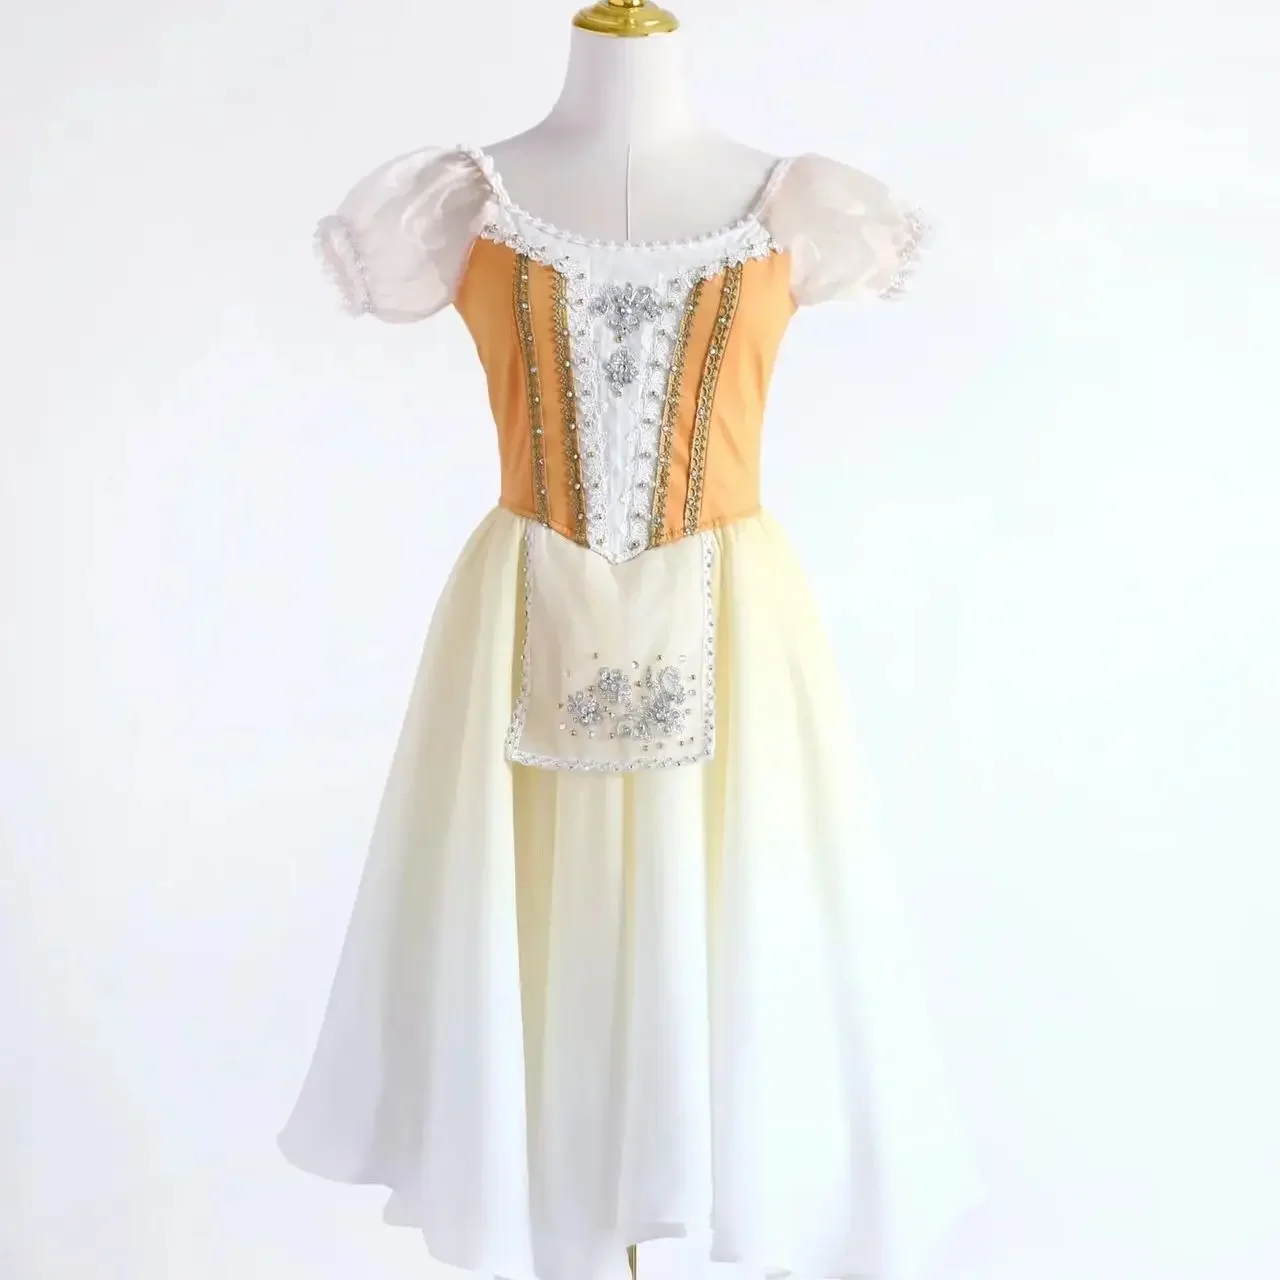 

Профессиональная балетная короткая юбка из фатина танцевальное платье романтическое балетное сценическое танцевальное платье для девочек, женщин, детей, взрослых